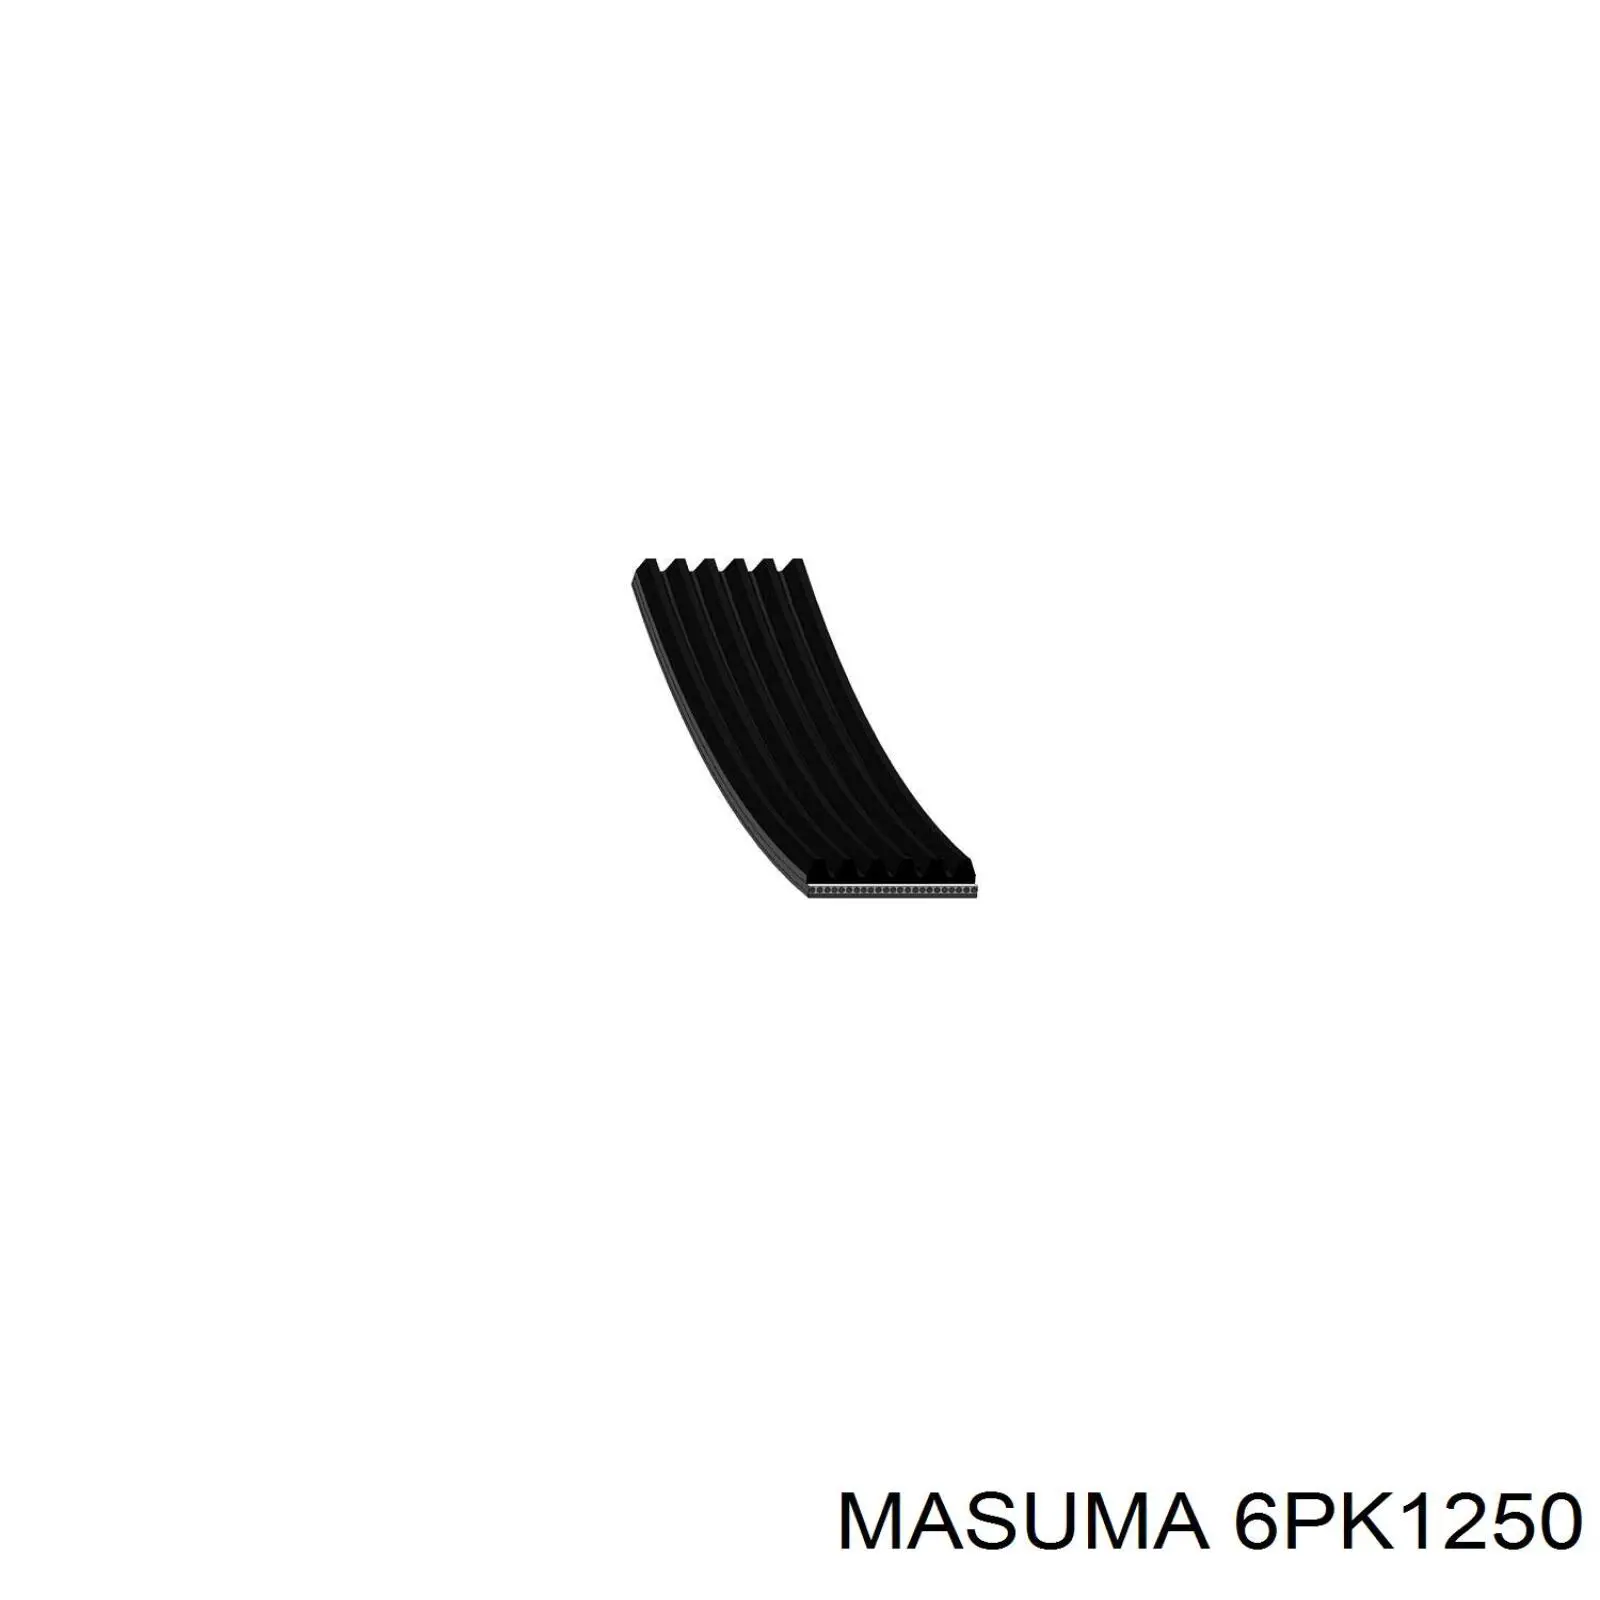 6PK1250 Masuma correa trapezoidal